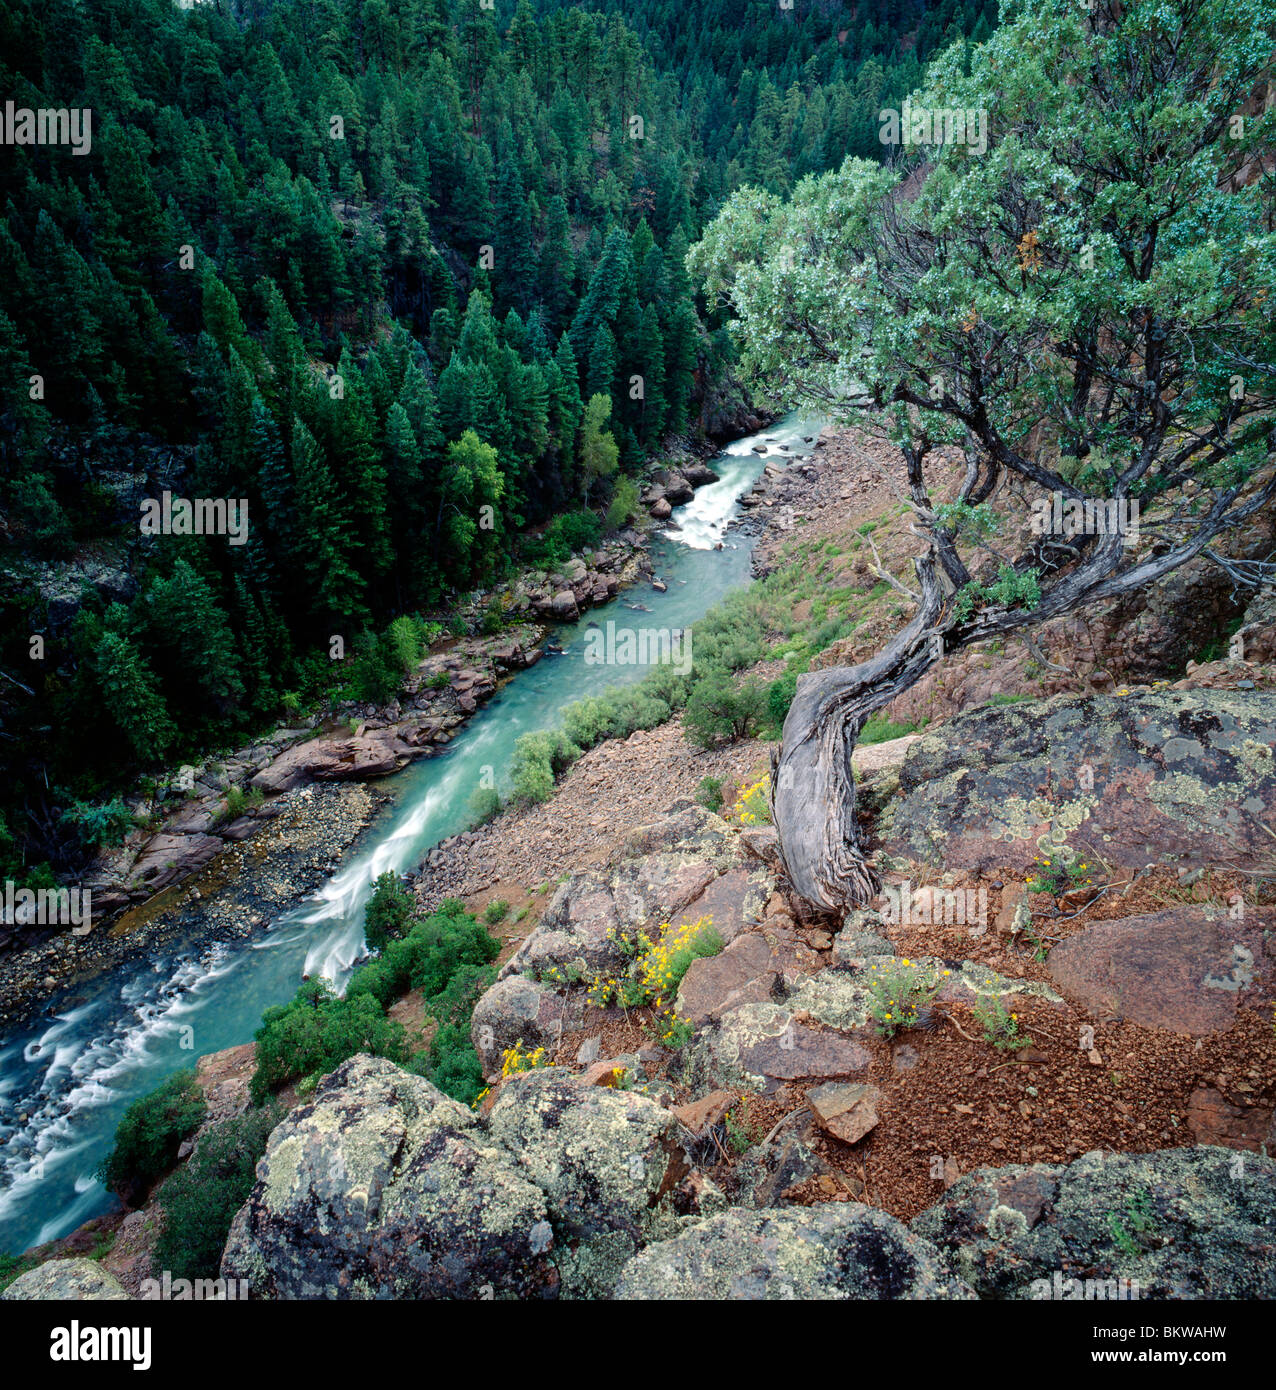 High overview of the Animas River, Animas Canyon, San Juan National Forest, near Durango, Colorado, USA Stock Photo